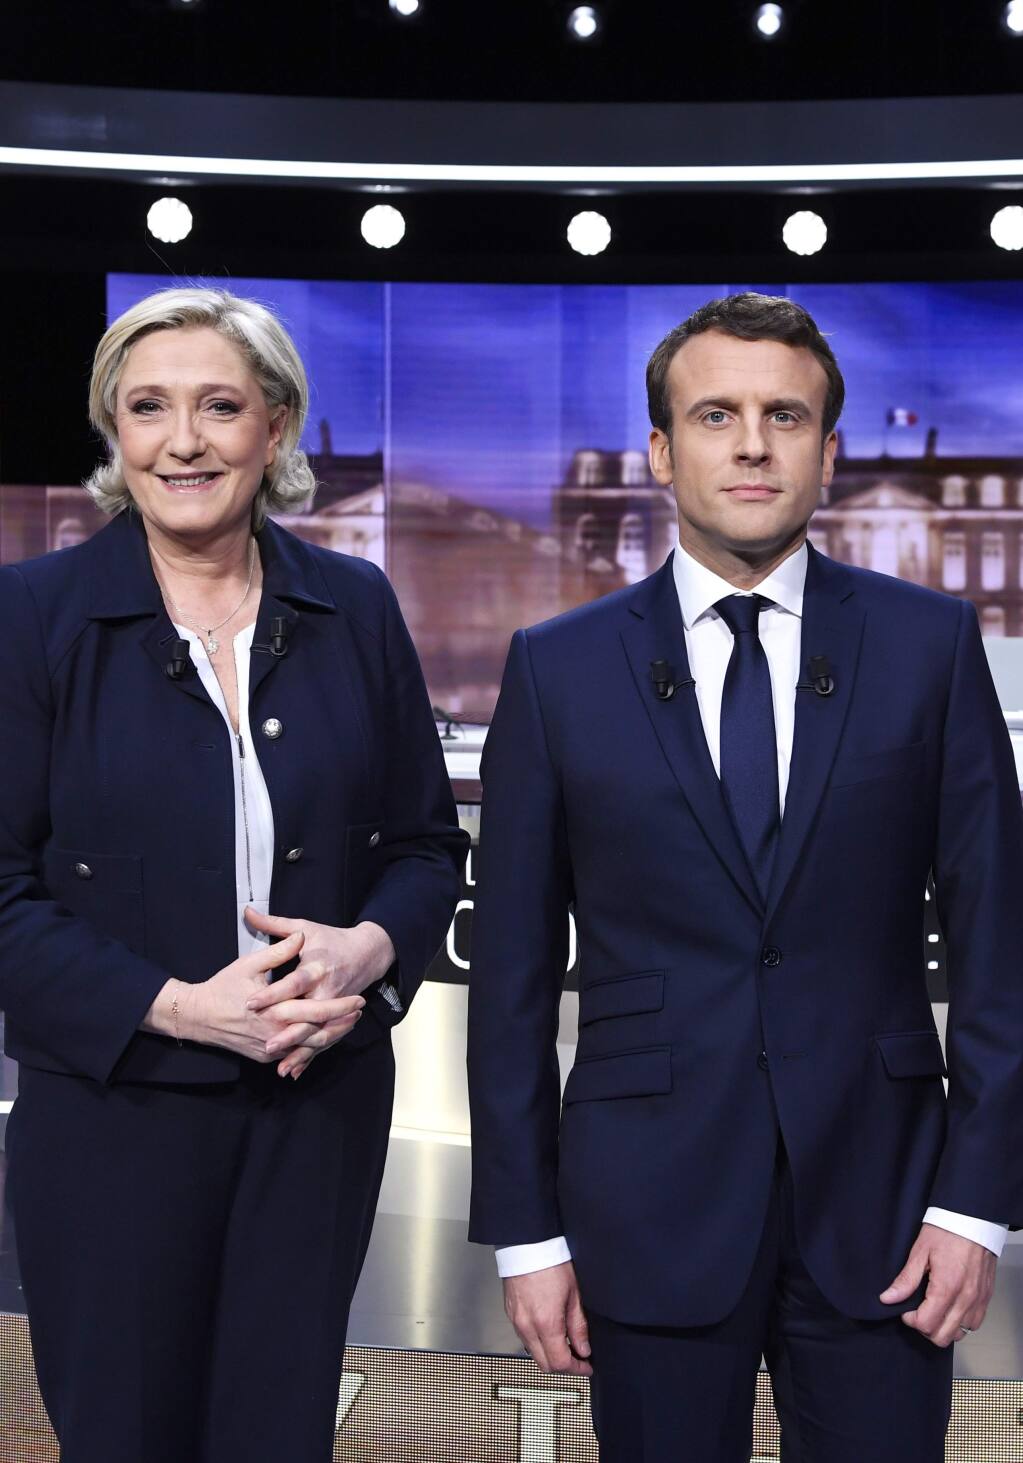 onderdelen voor eeuwig Installatie Emmanuel Macron and Marine Le Pen come out swinging in high-stakes TV debate